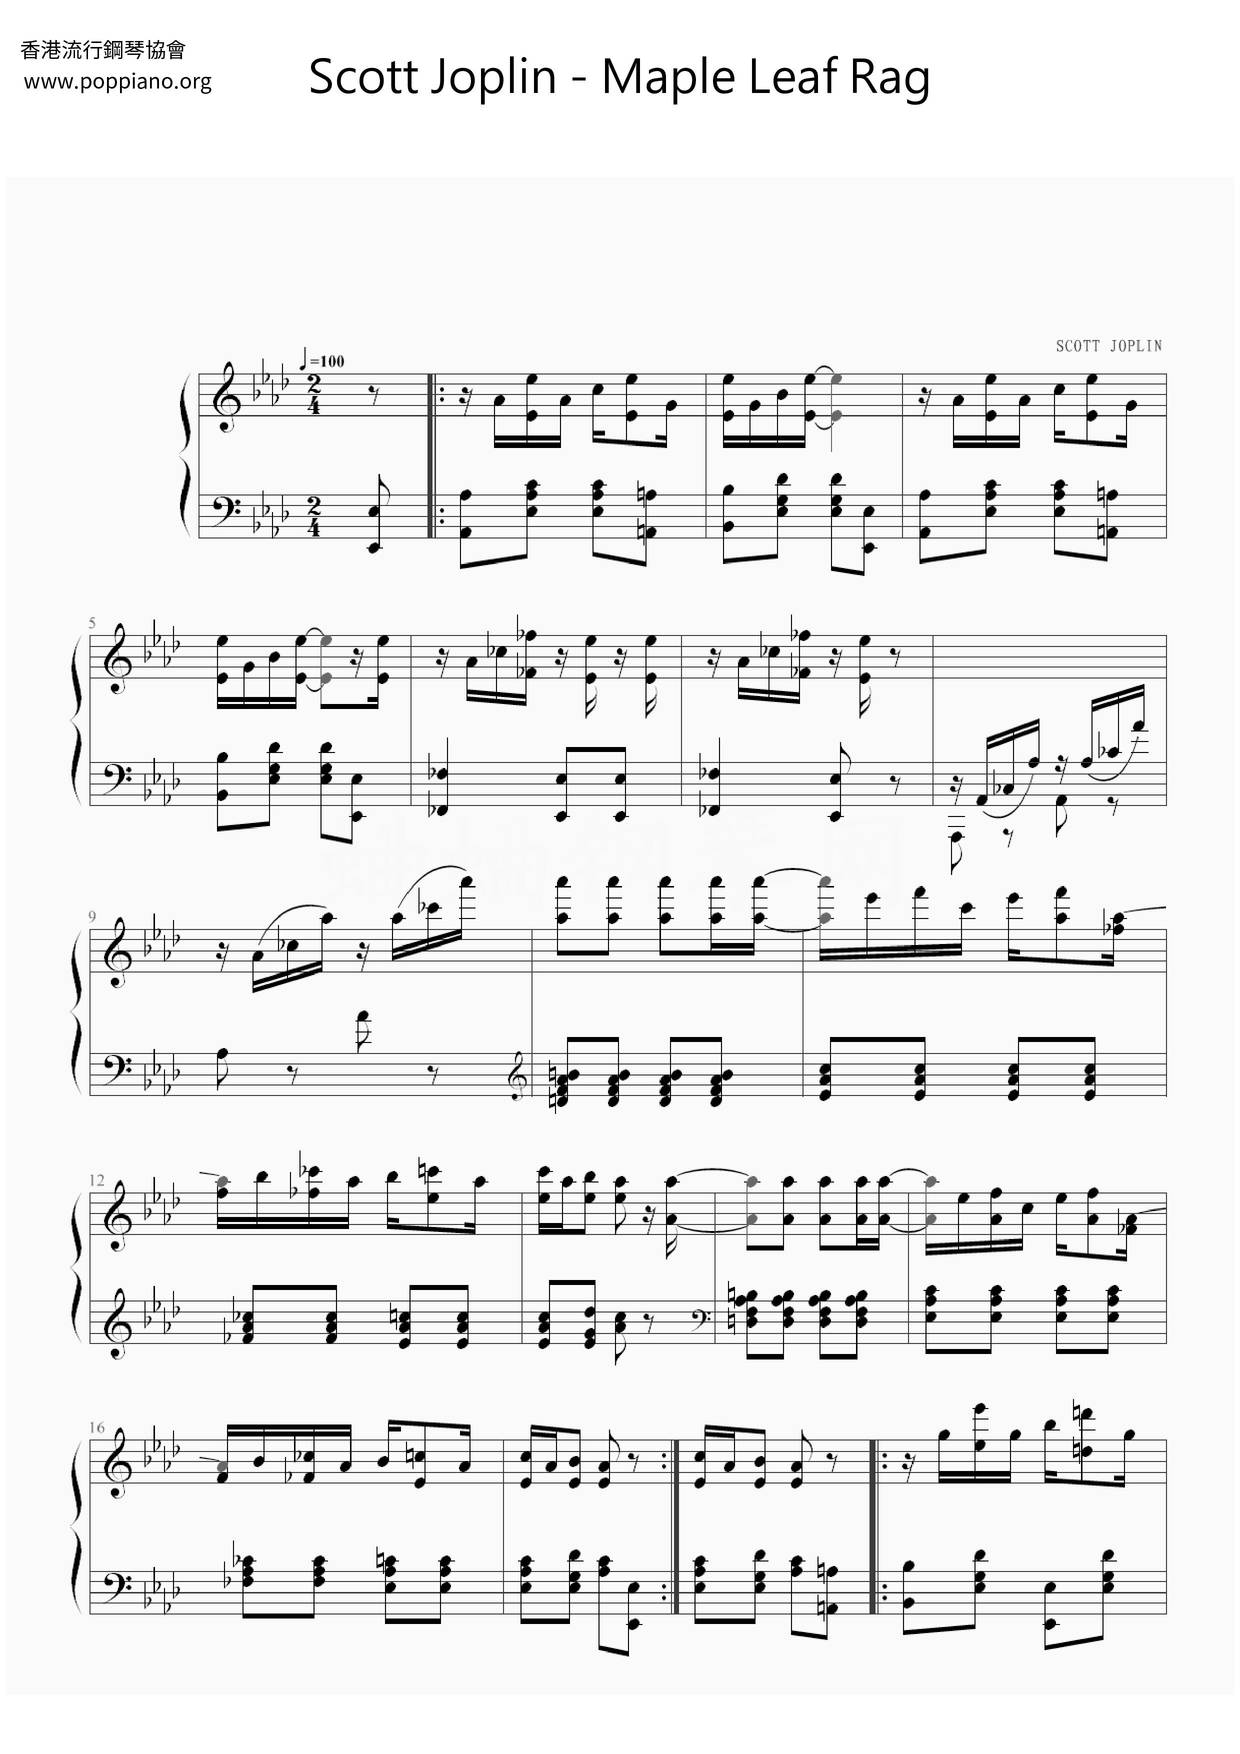 Maple Leaf Ragピアノ譜